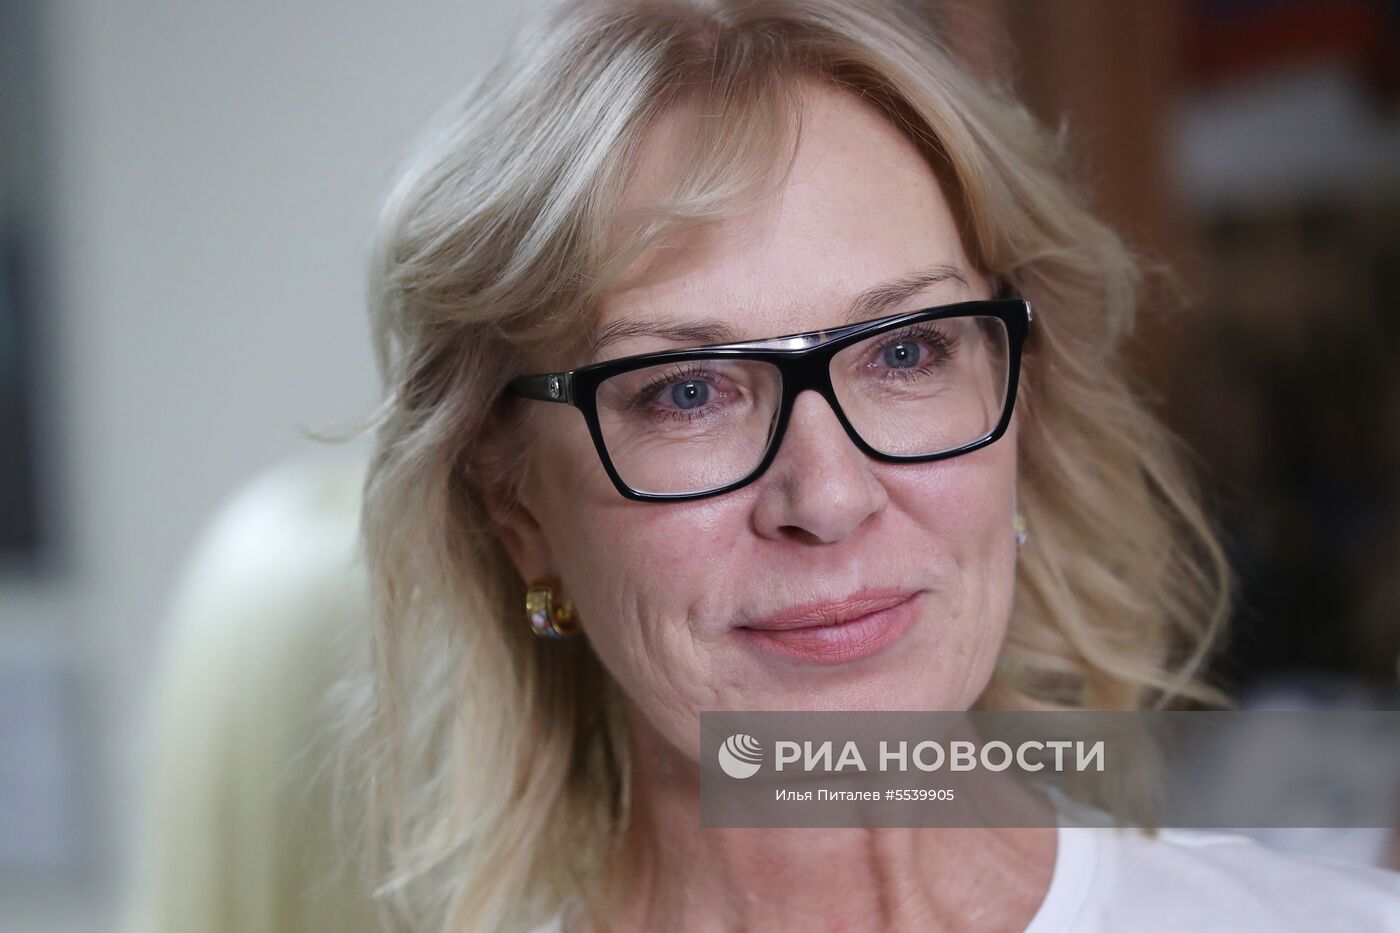 Уполномоченный по правам человека в России Т. Москалькова провела встречу с украинской коллегой Л. Денисовой